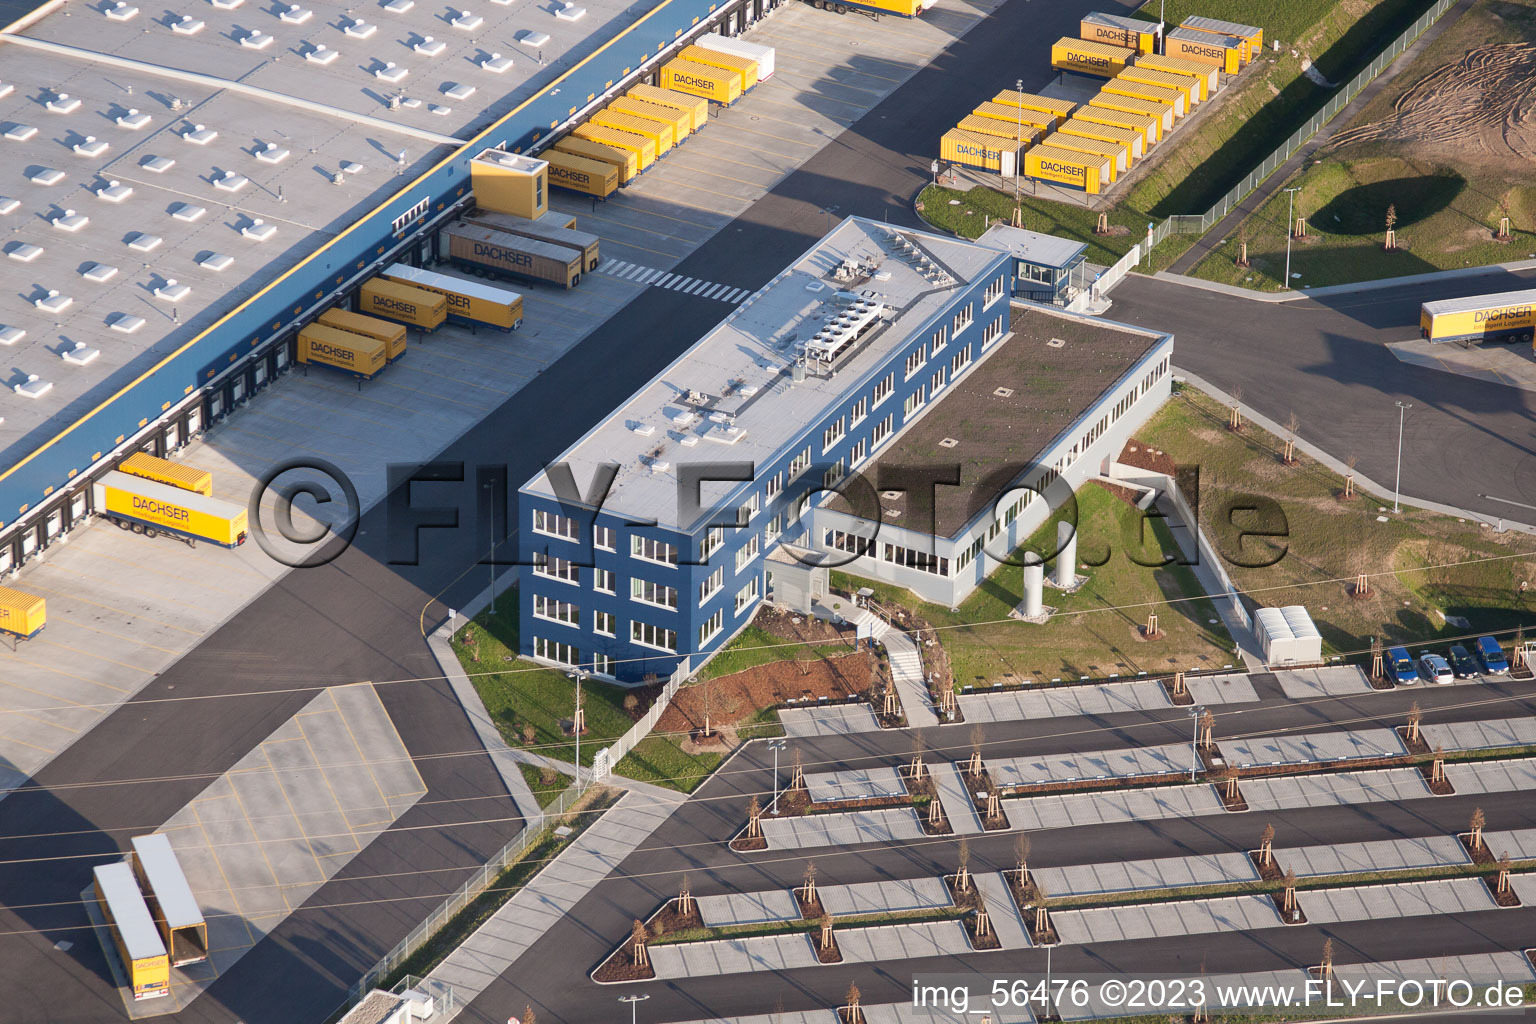 DACHSER Logistikzentrum Karlsruhe GmbH, Malsch im Bundesland Baden-Württemberg, Deutschland von der Drohne aus gesehen